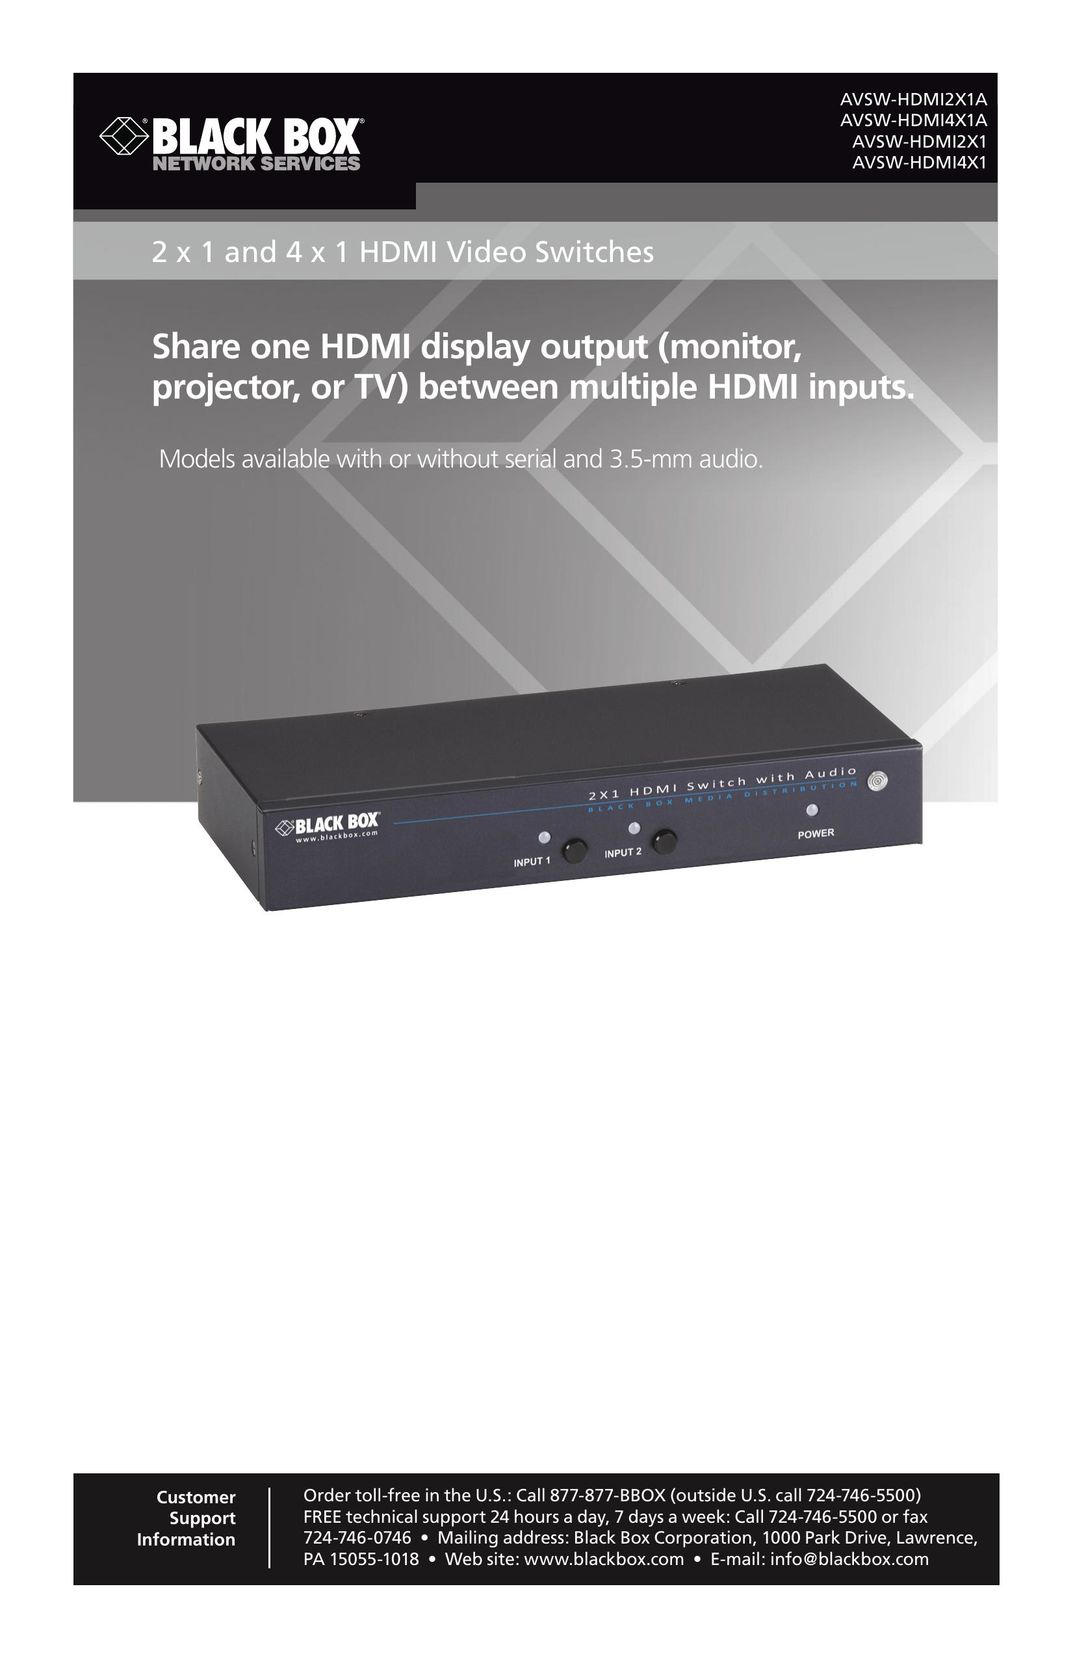 Black Box AVSW-HDMI2X1 TV Video Accessories User Manual